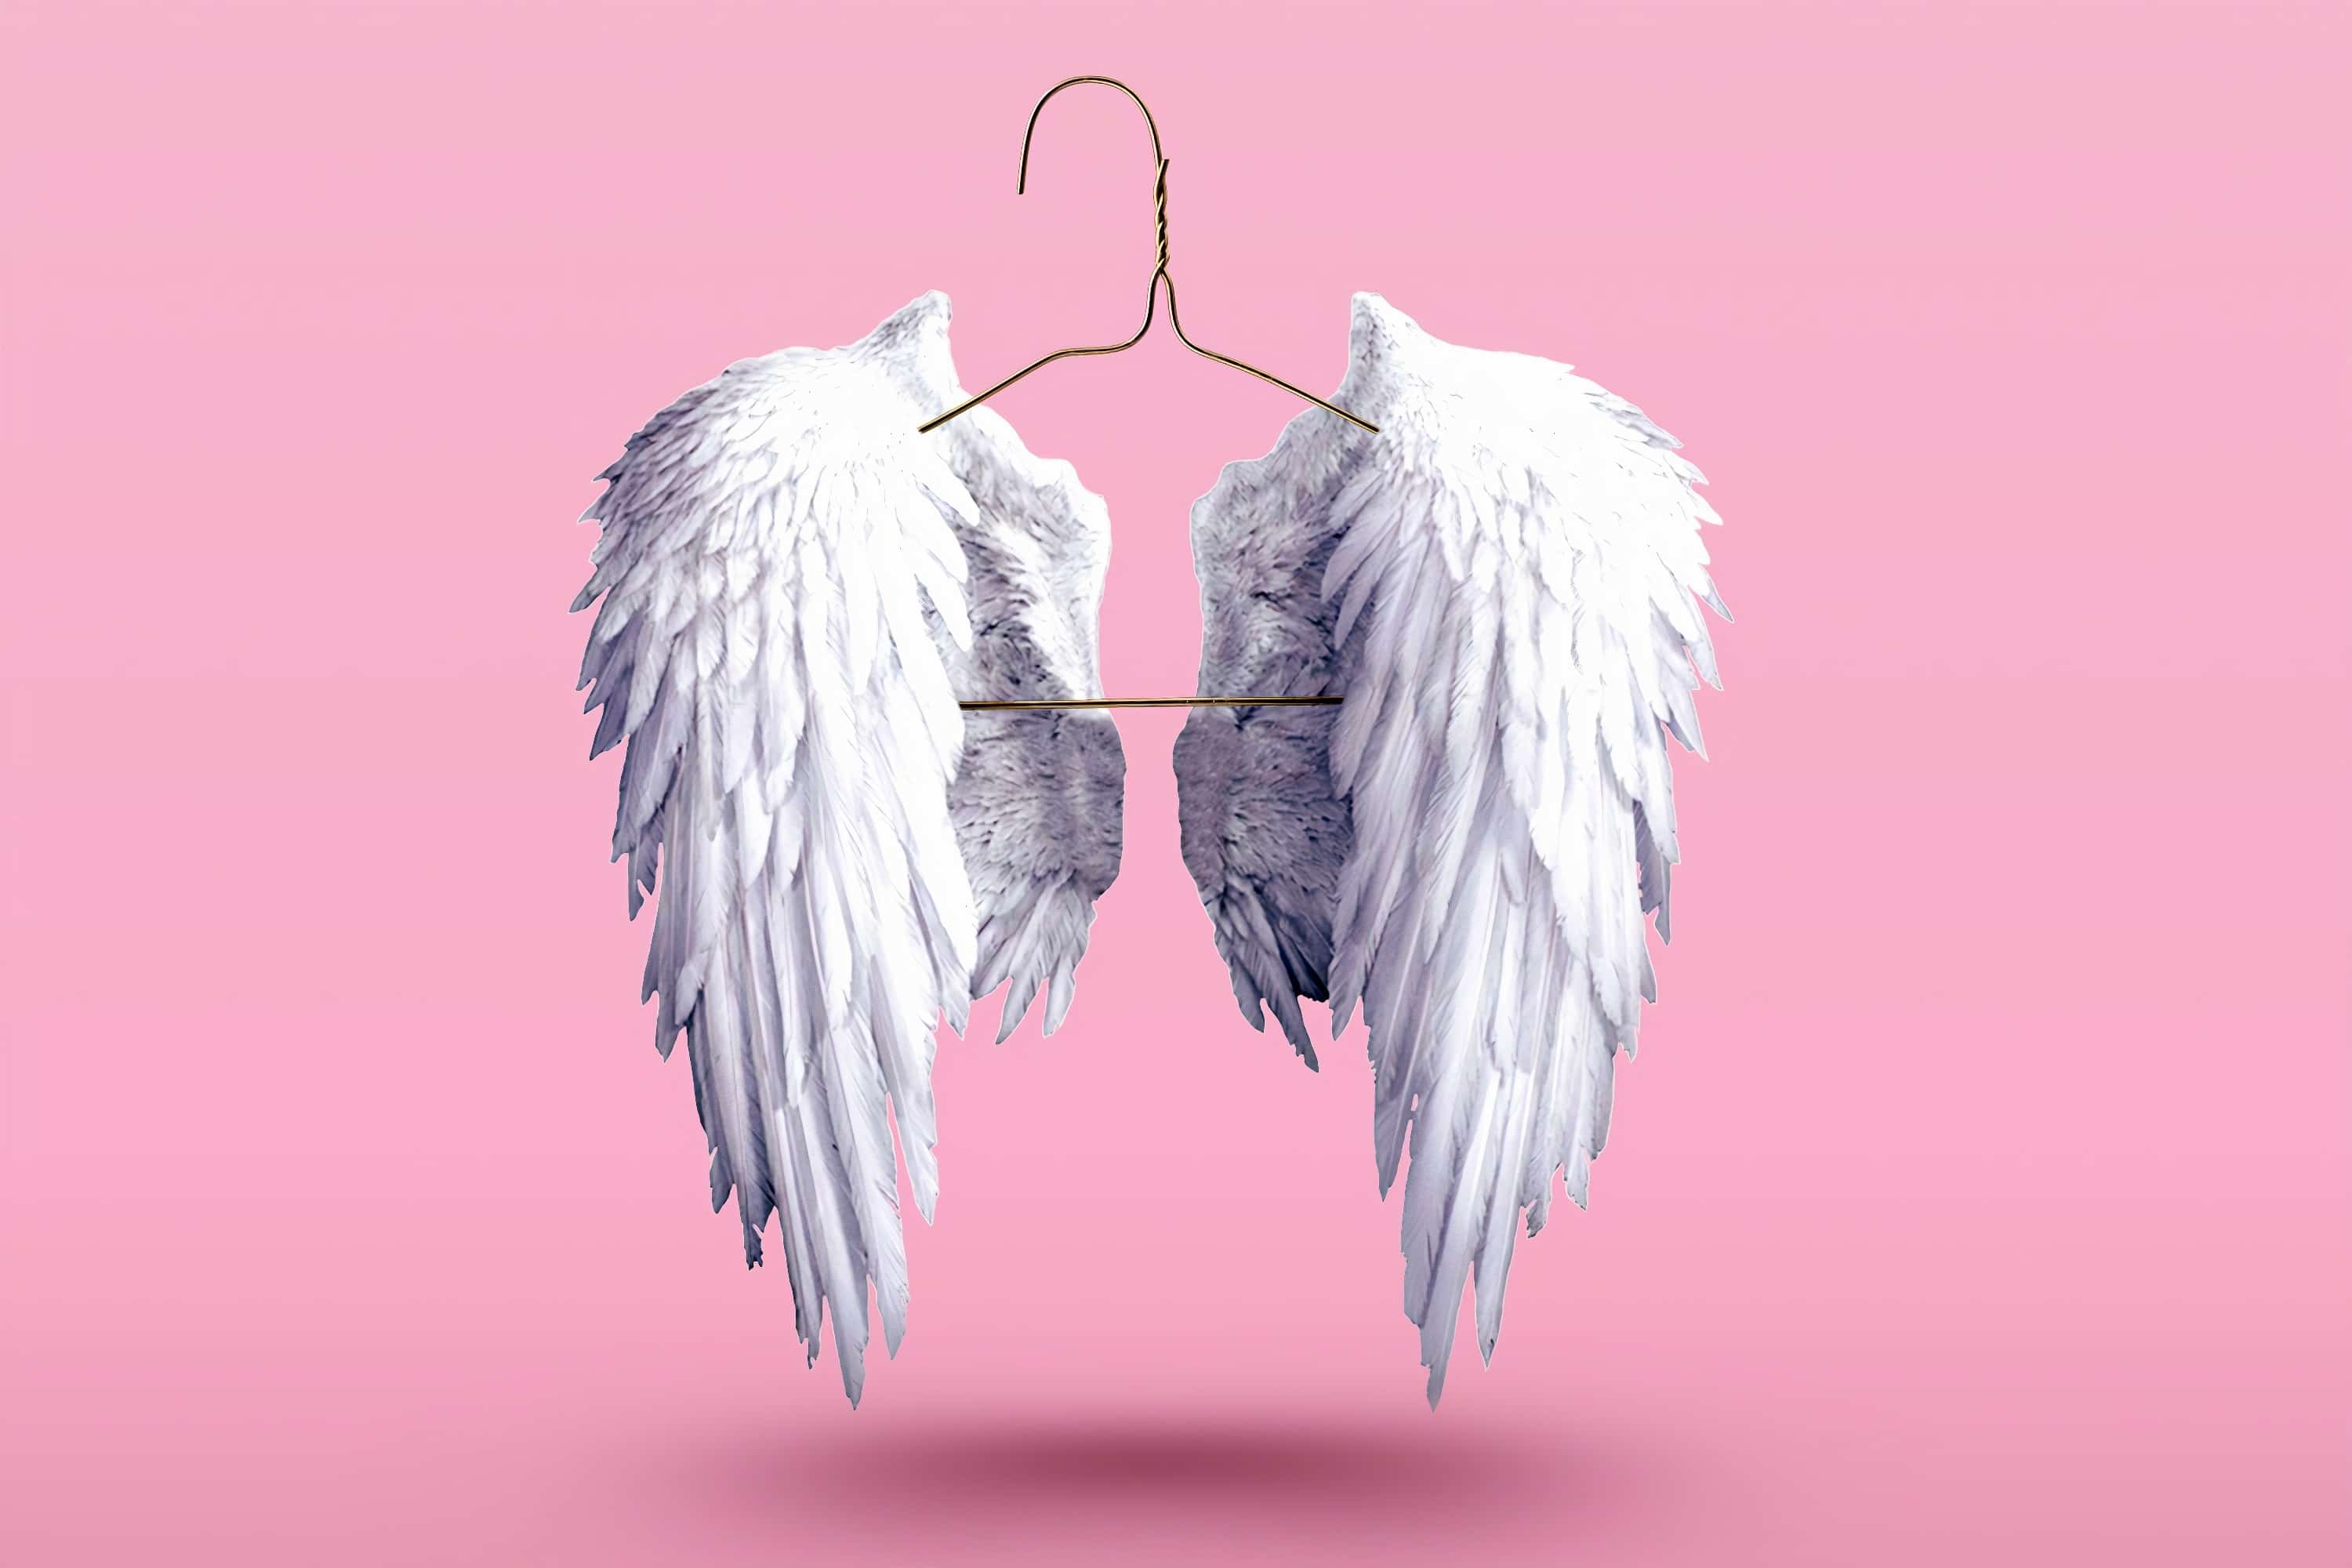 comment faire quand les signes des anges sont incompréhensibles ?